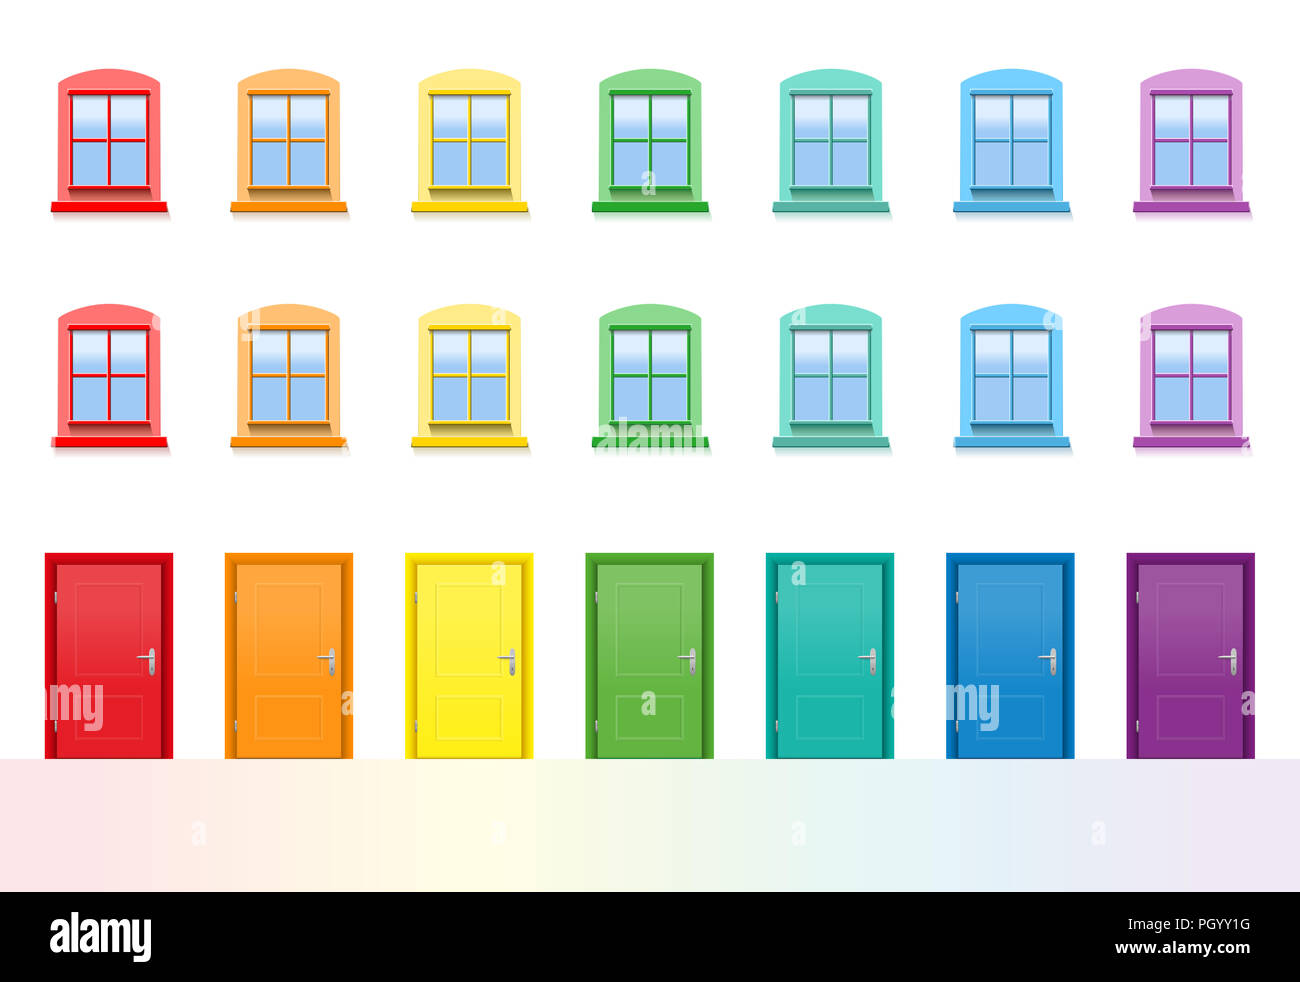 Portes et fenêtres colorées. De couleur arc-en-ciel, heureux avant de la chambre d'amis - illustration sur fond blanc. Banque D'Images